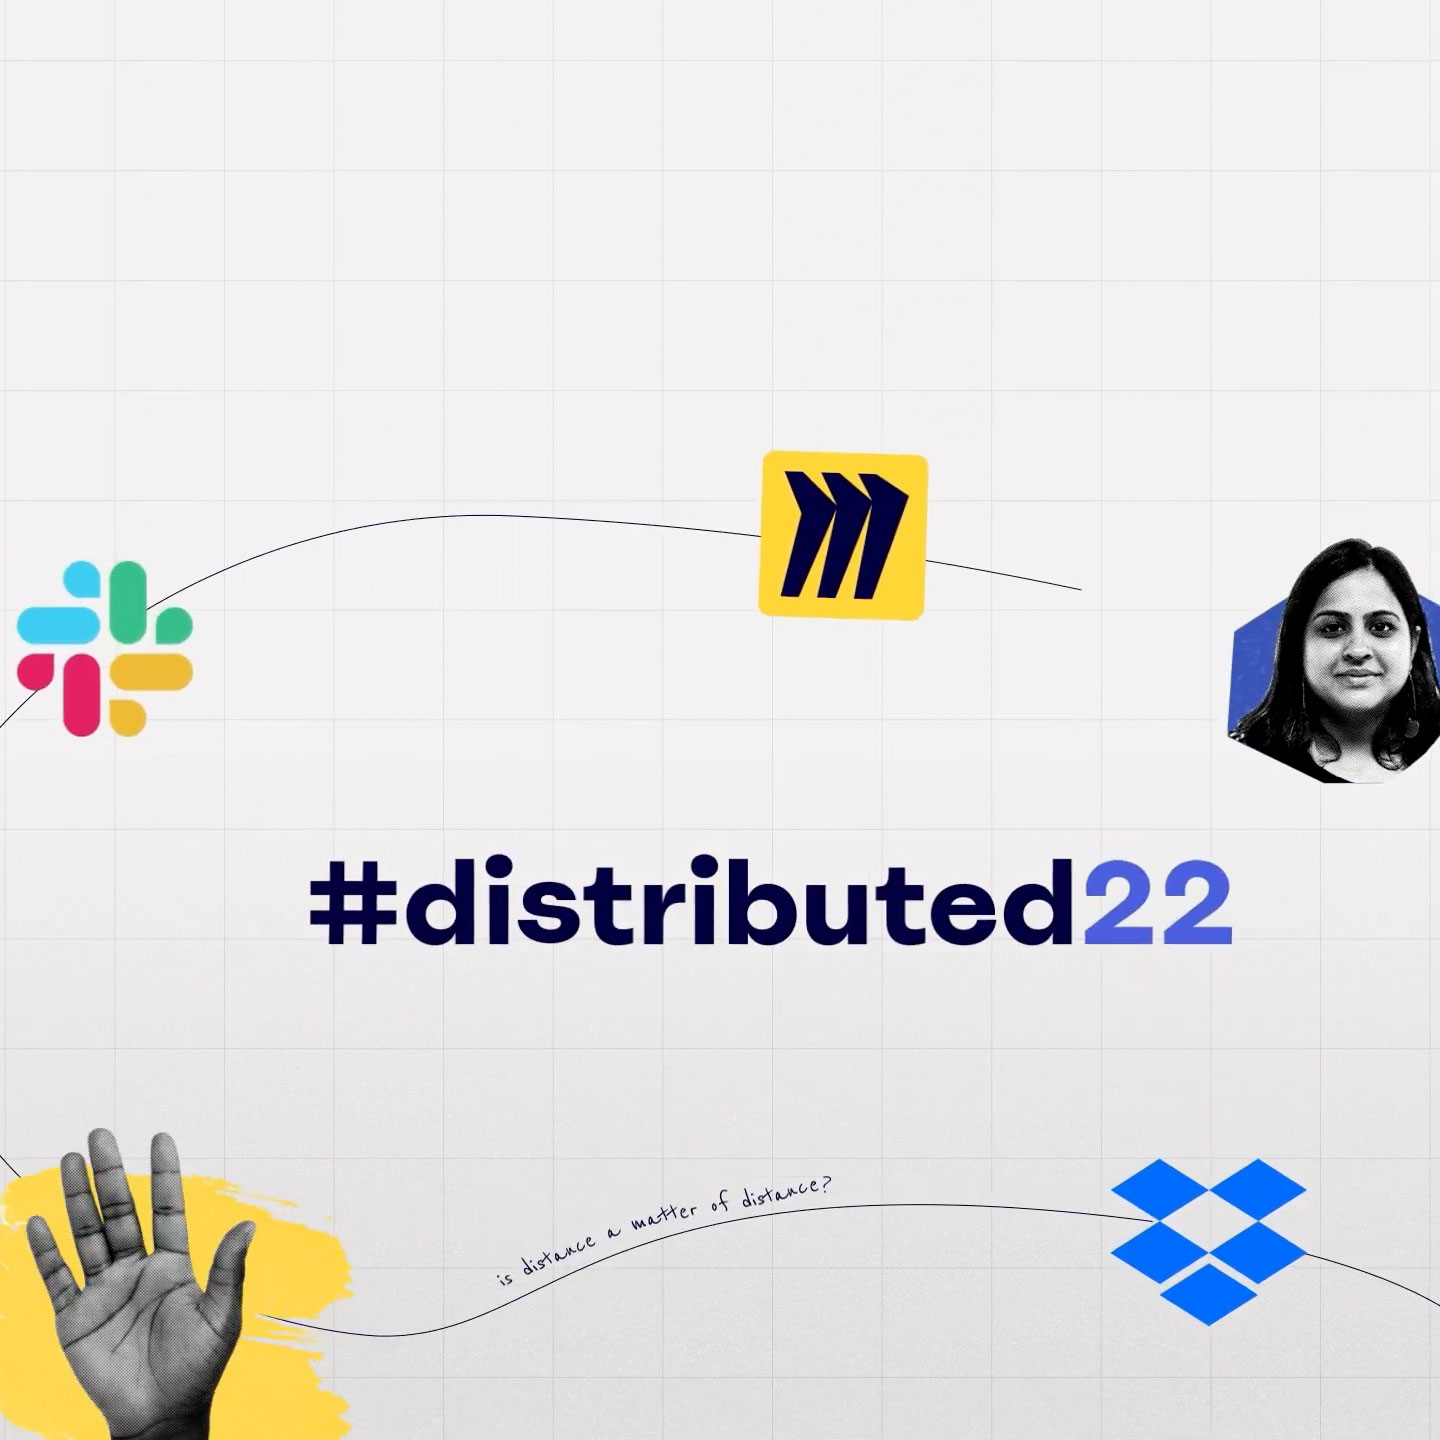 Kartu judul dari event #distributed22 dengan logo Miro, Slack, dan Dropbox